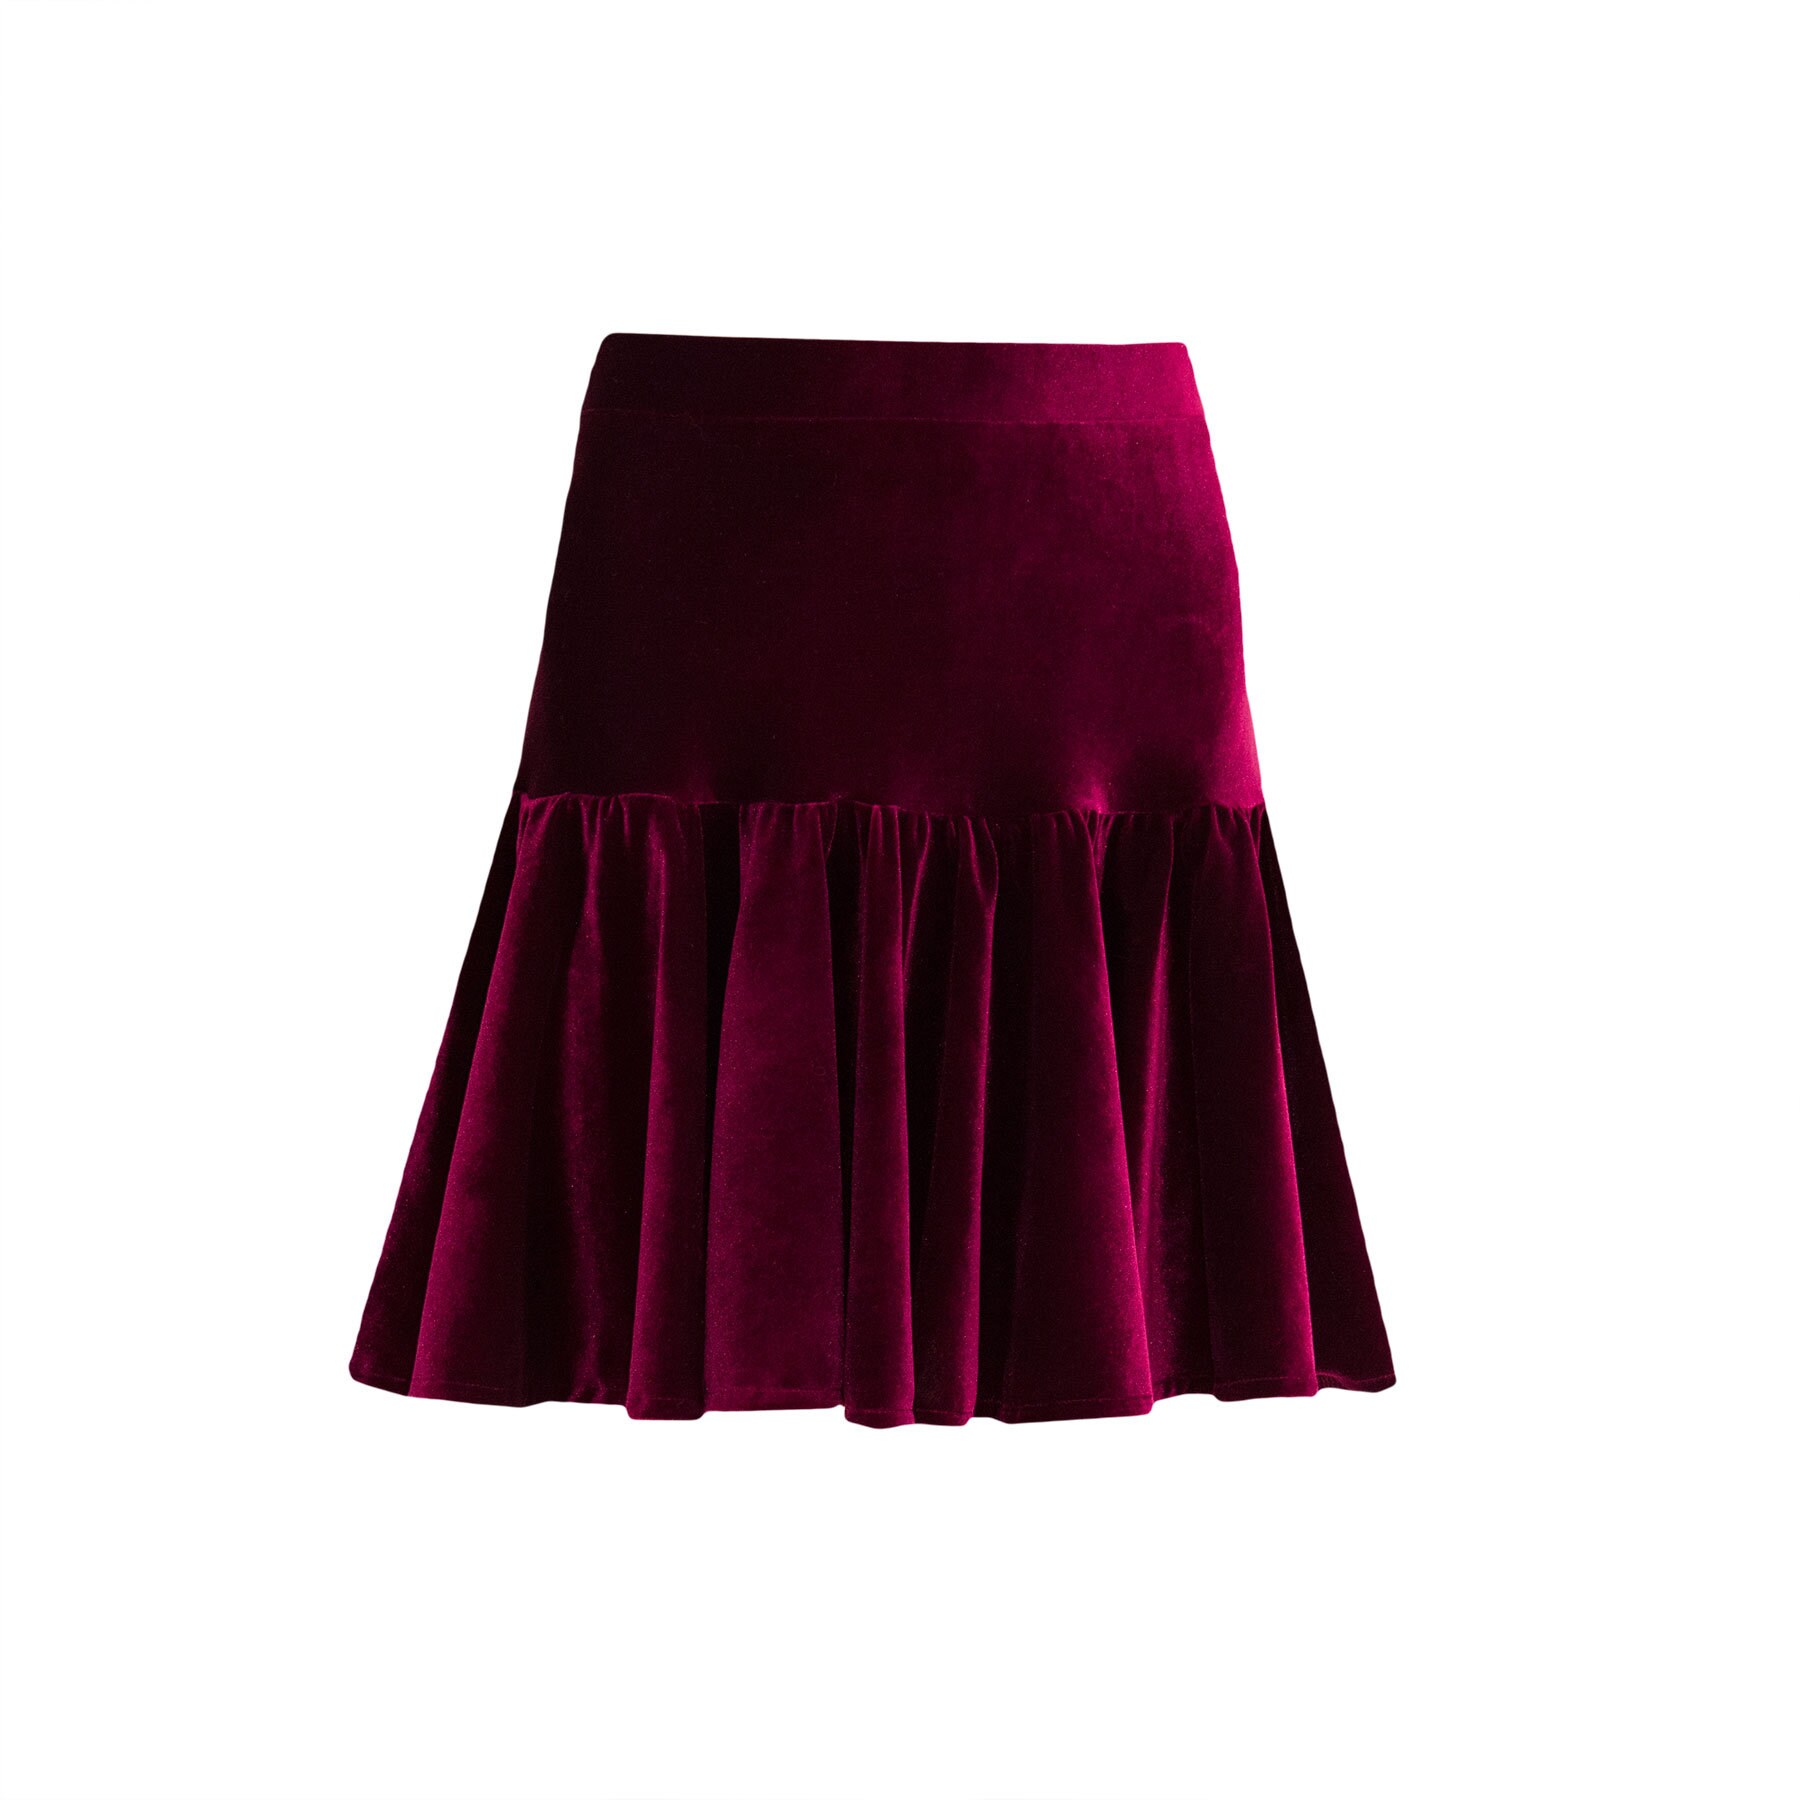 VELVET mini skirt/ short skirt/ Flounce mini skirt/ Sexy mini | Etsy